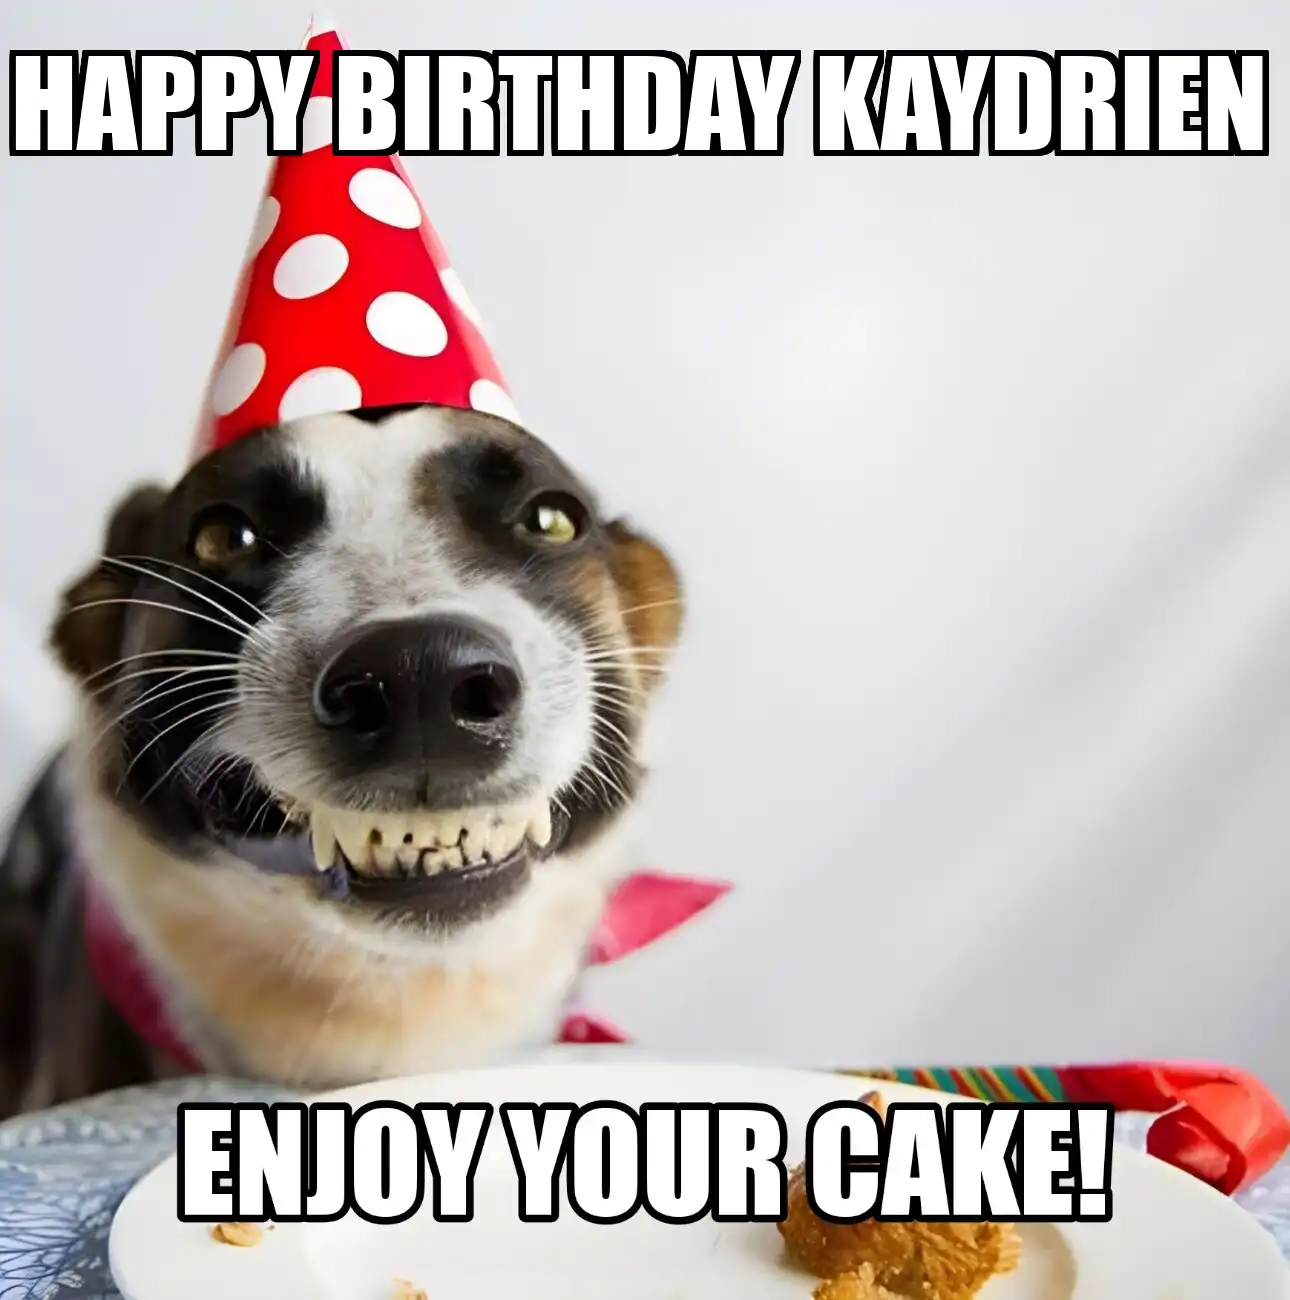 Happy Birthday Kaydrien Enjoy Your Cake Dog Meme